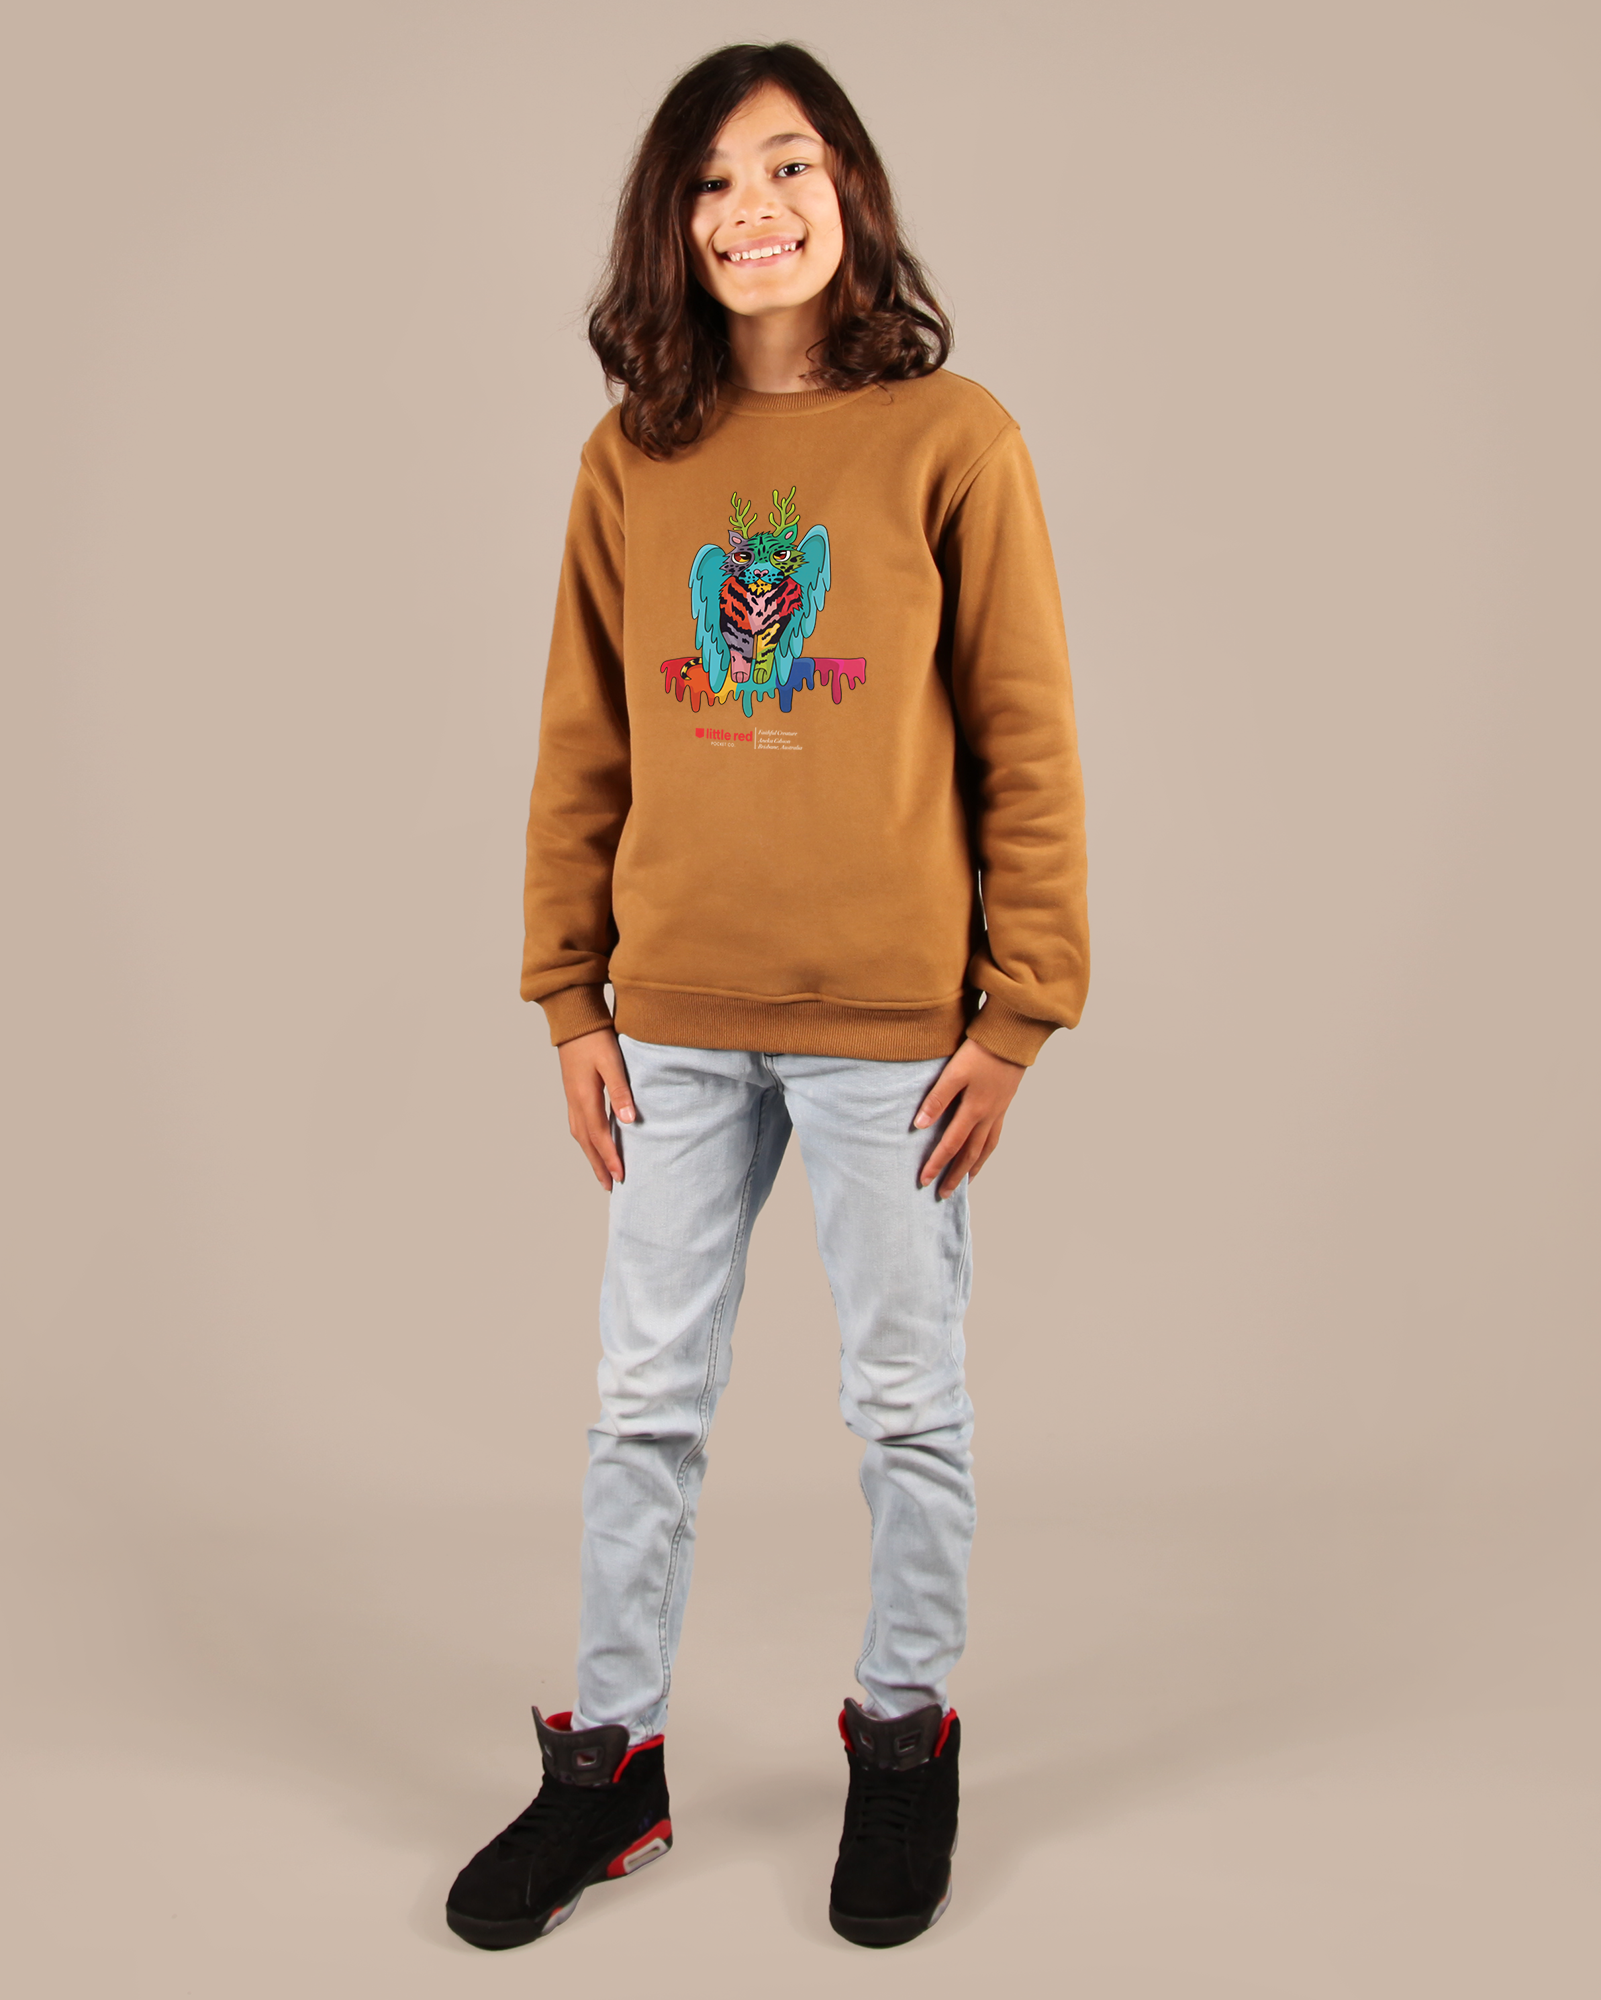 "Faithful Creature" Kids Crewneck Sweater - (Unisex)